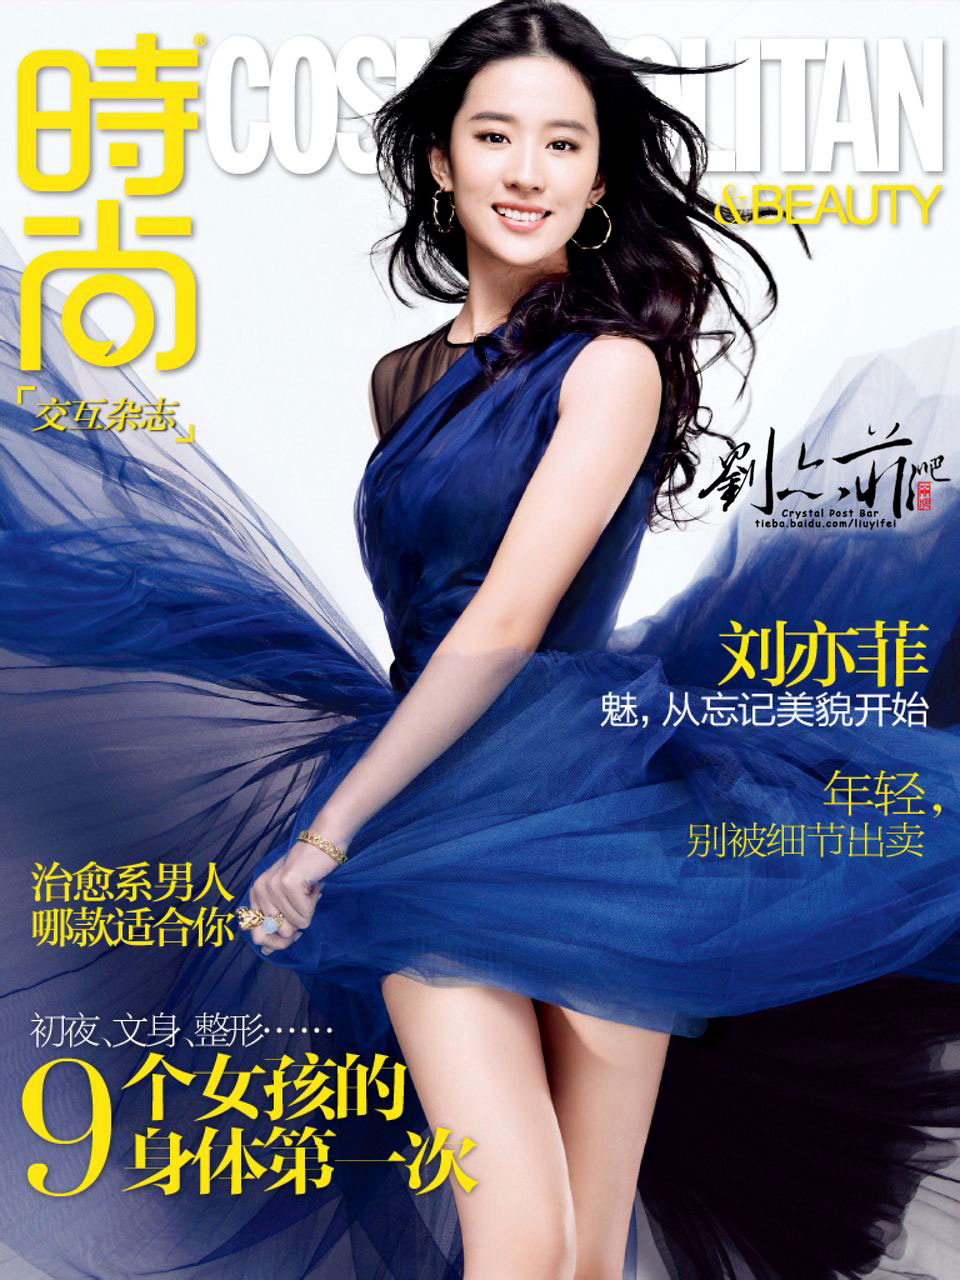 Kinesko izdanje časopisa Cosmopolitan s Liu Yifei na naslovnici.